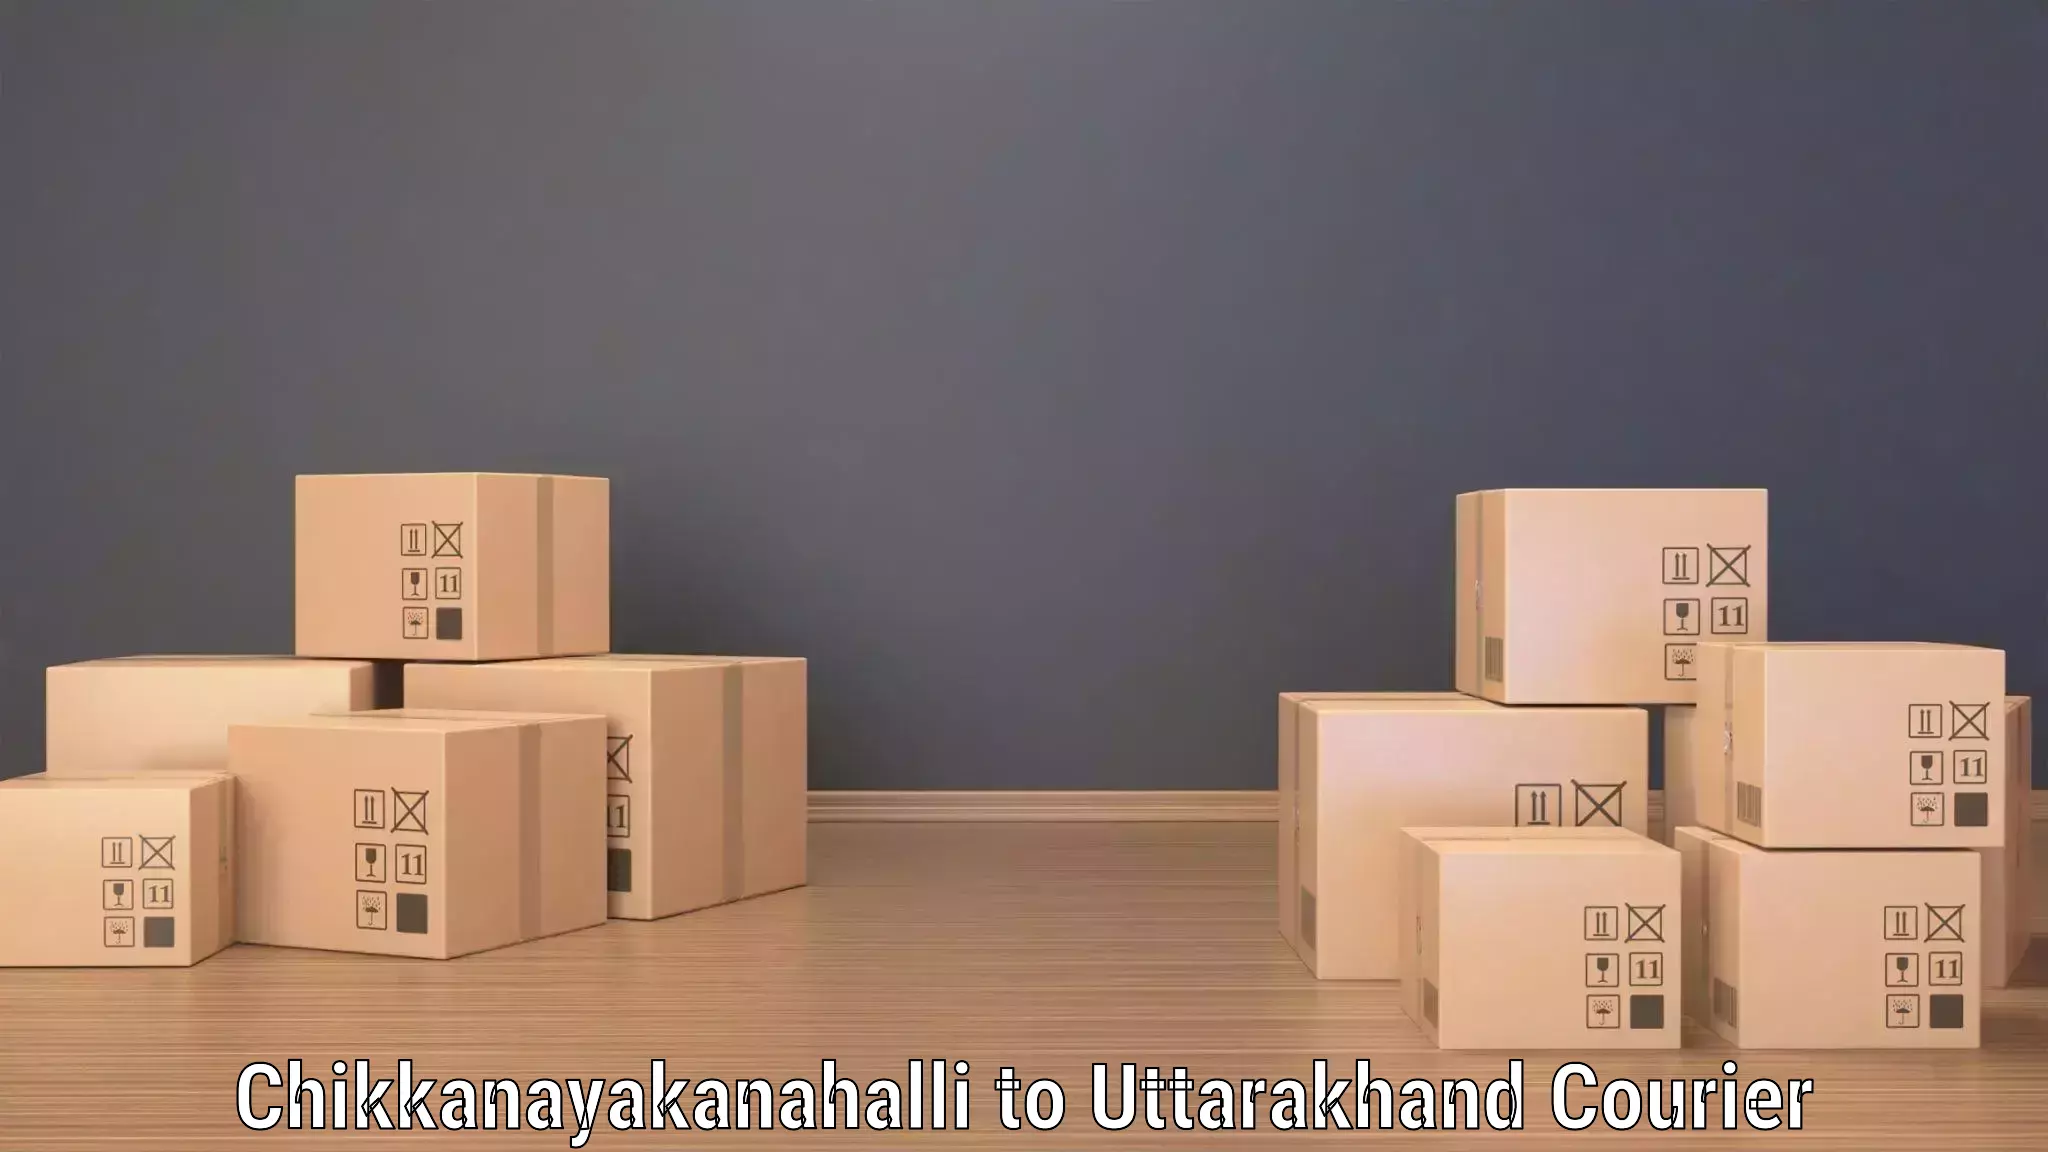 Full-service courier options in Chikkanayakanahalli to Doiwala